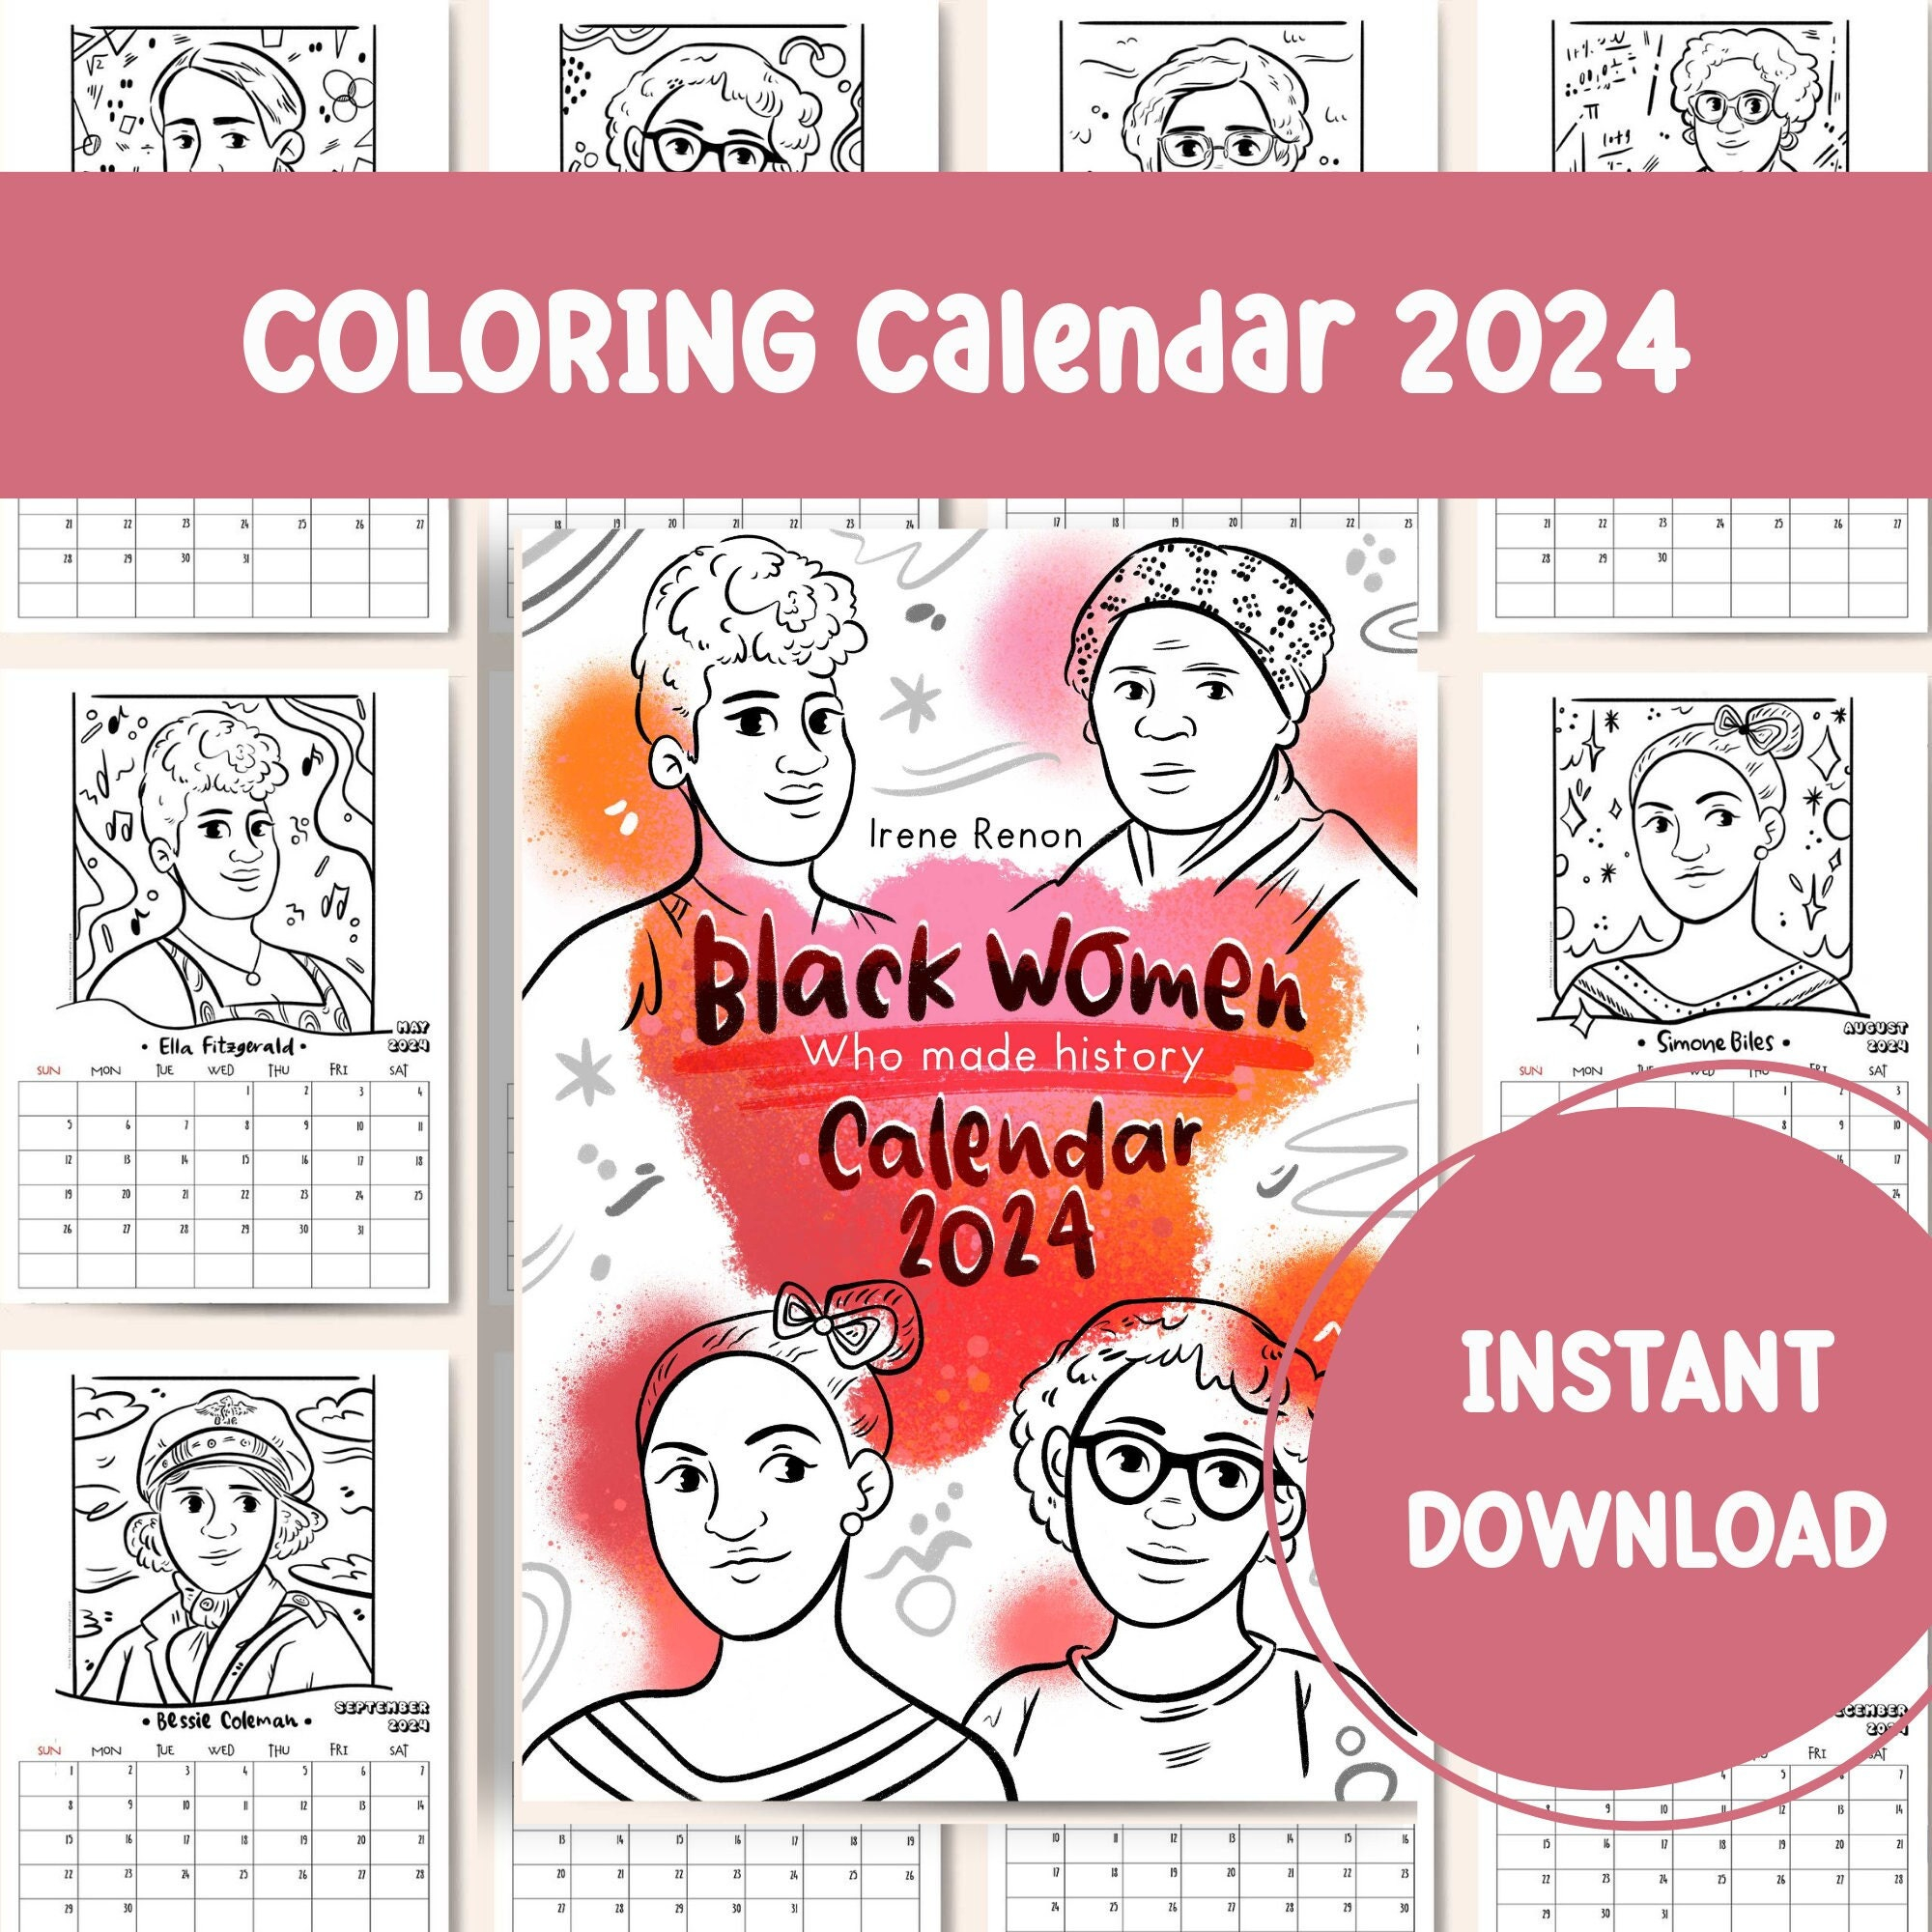 Coloring Calendar 2024 Printable Calendar Famous Black Women - Etsy for Coloring Calendar 2024 Printable